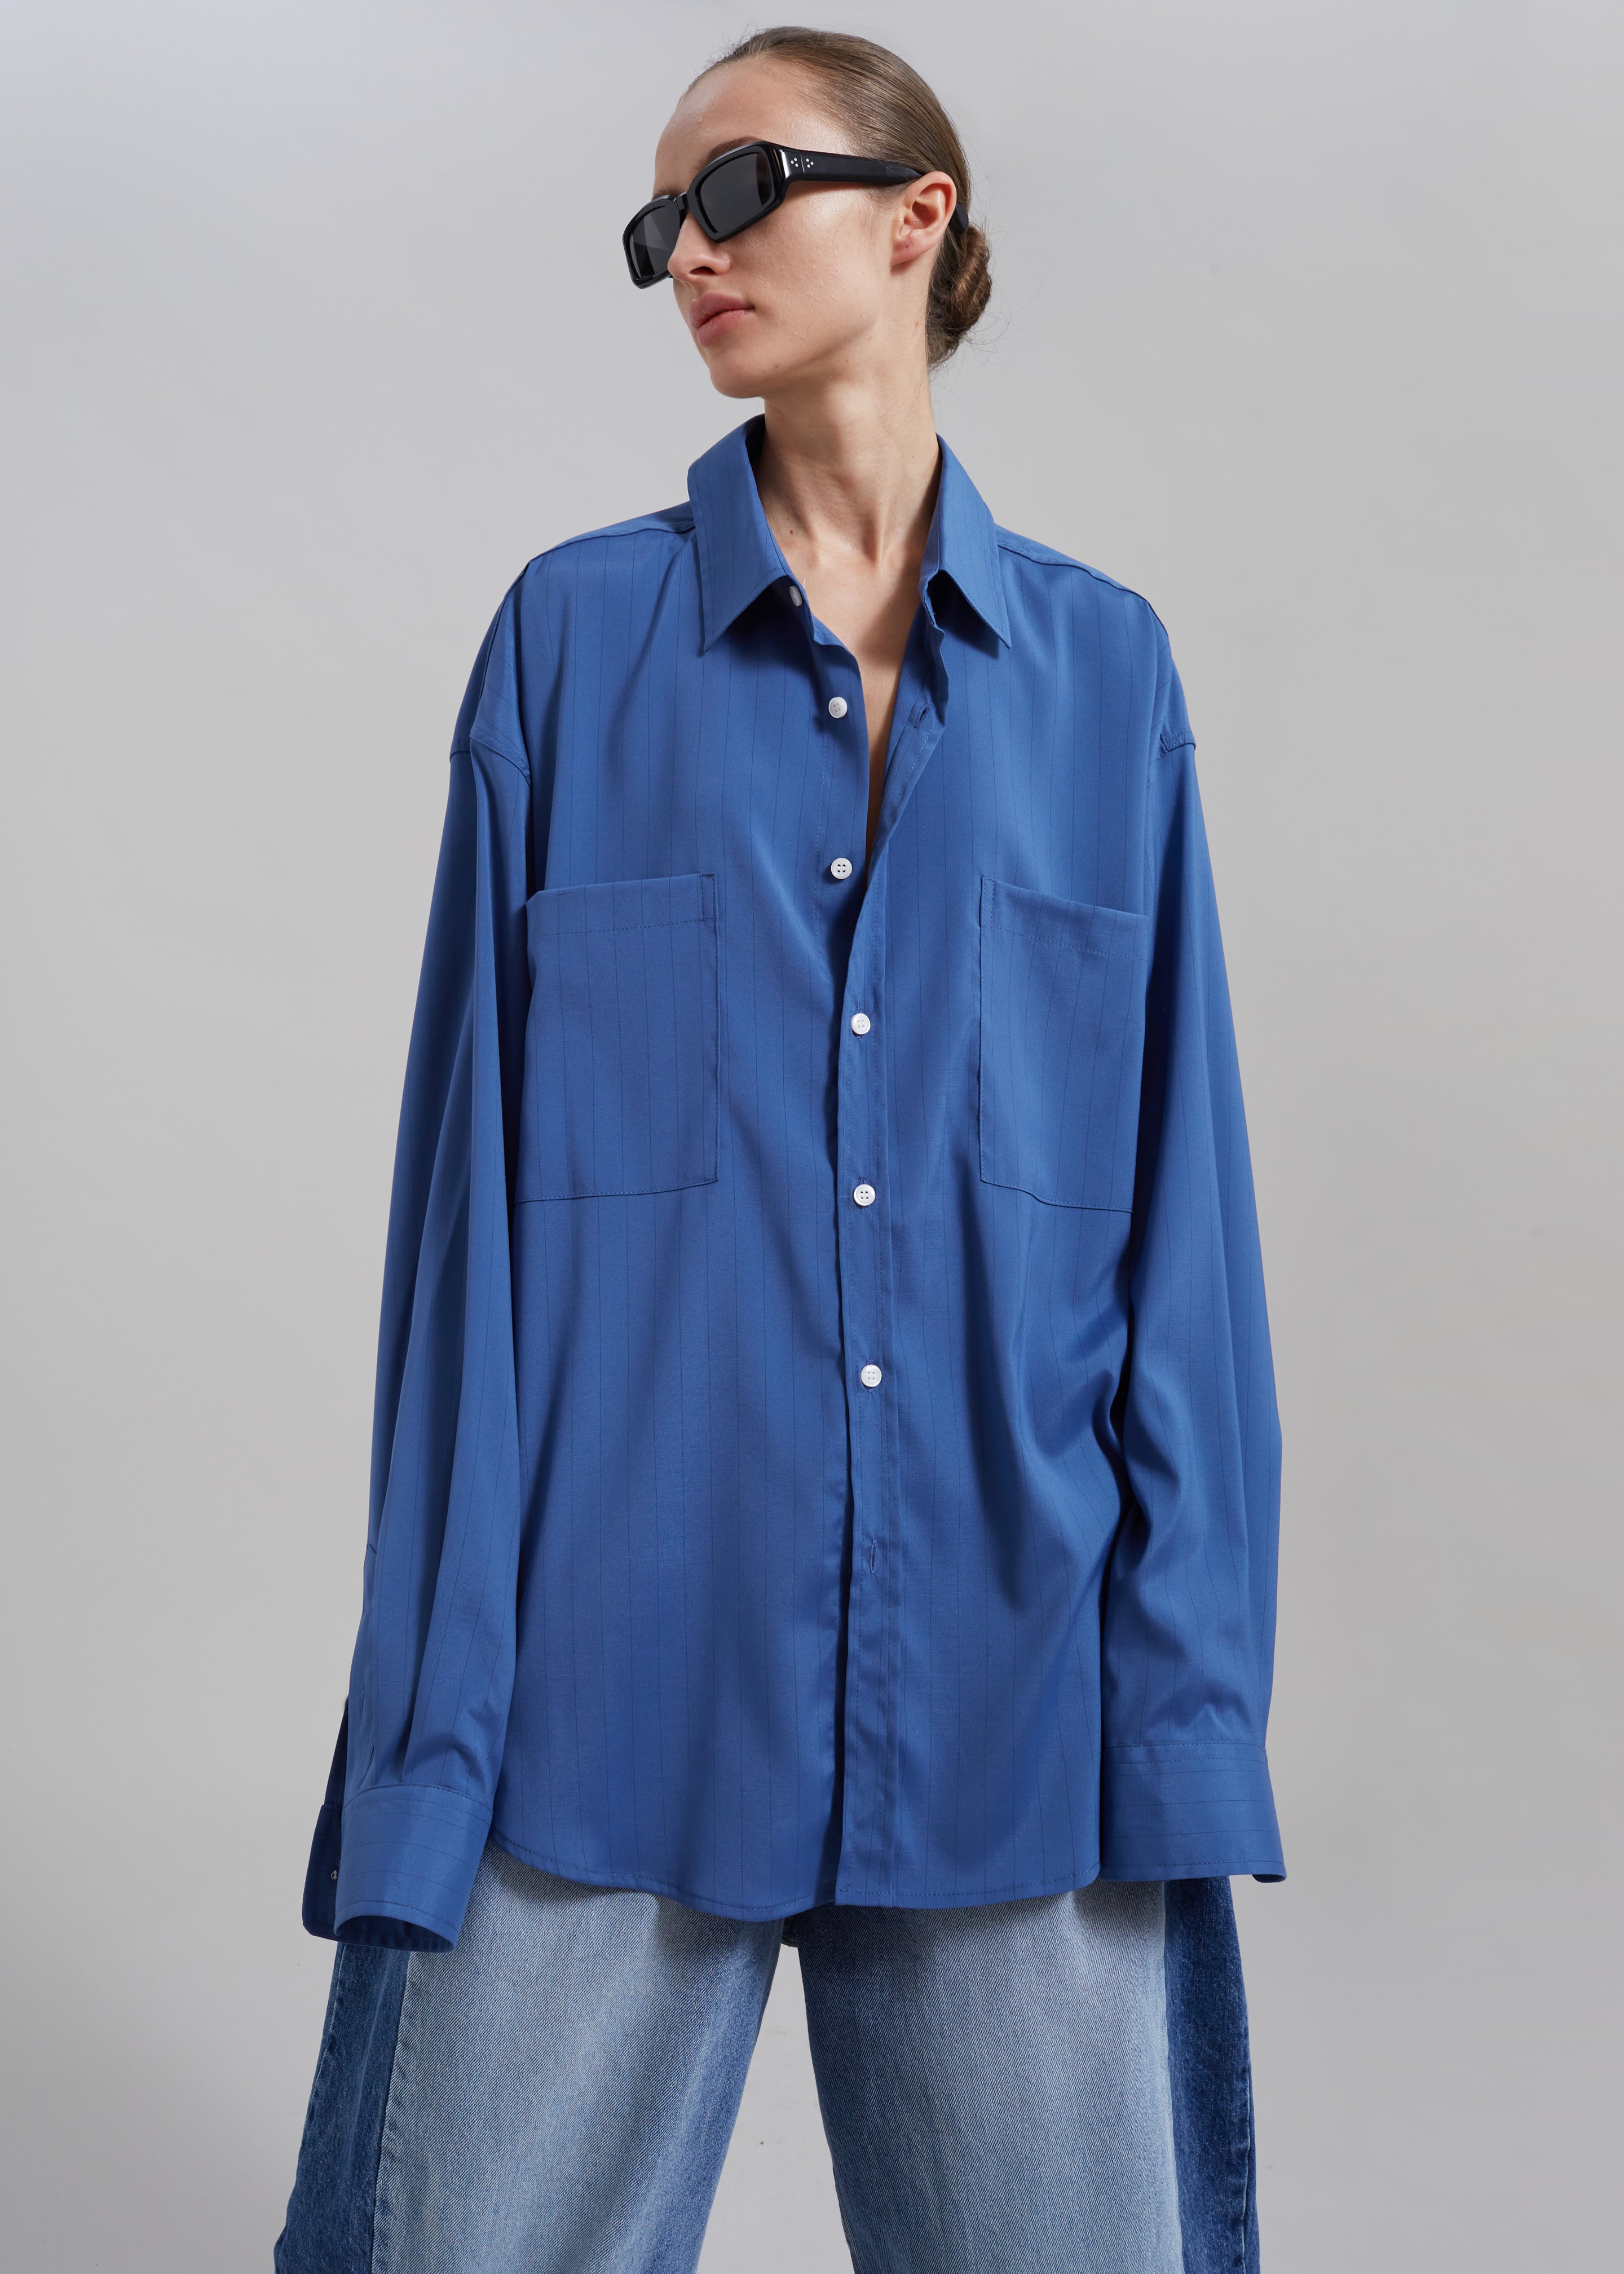 Elowen Button Up Shirt - Blue Stripe - 2